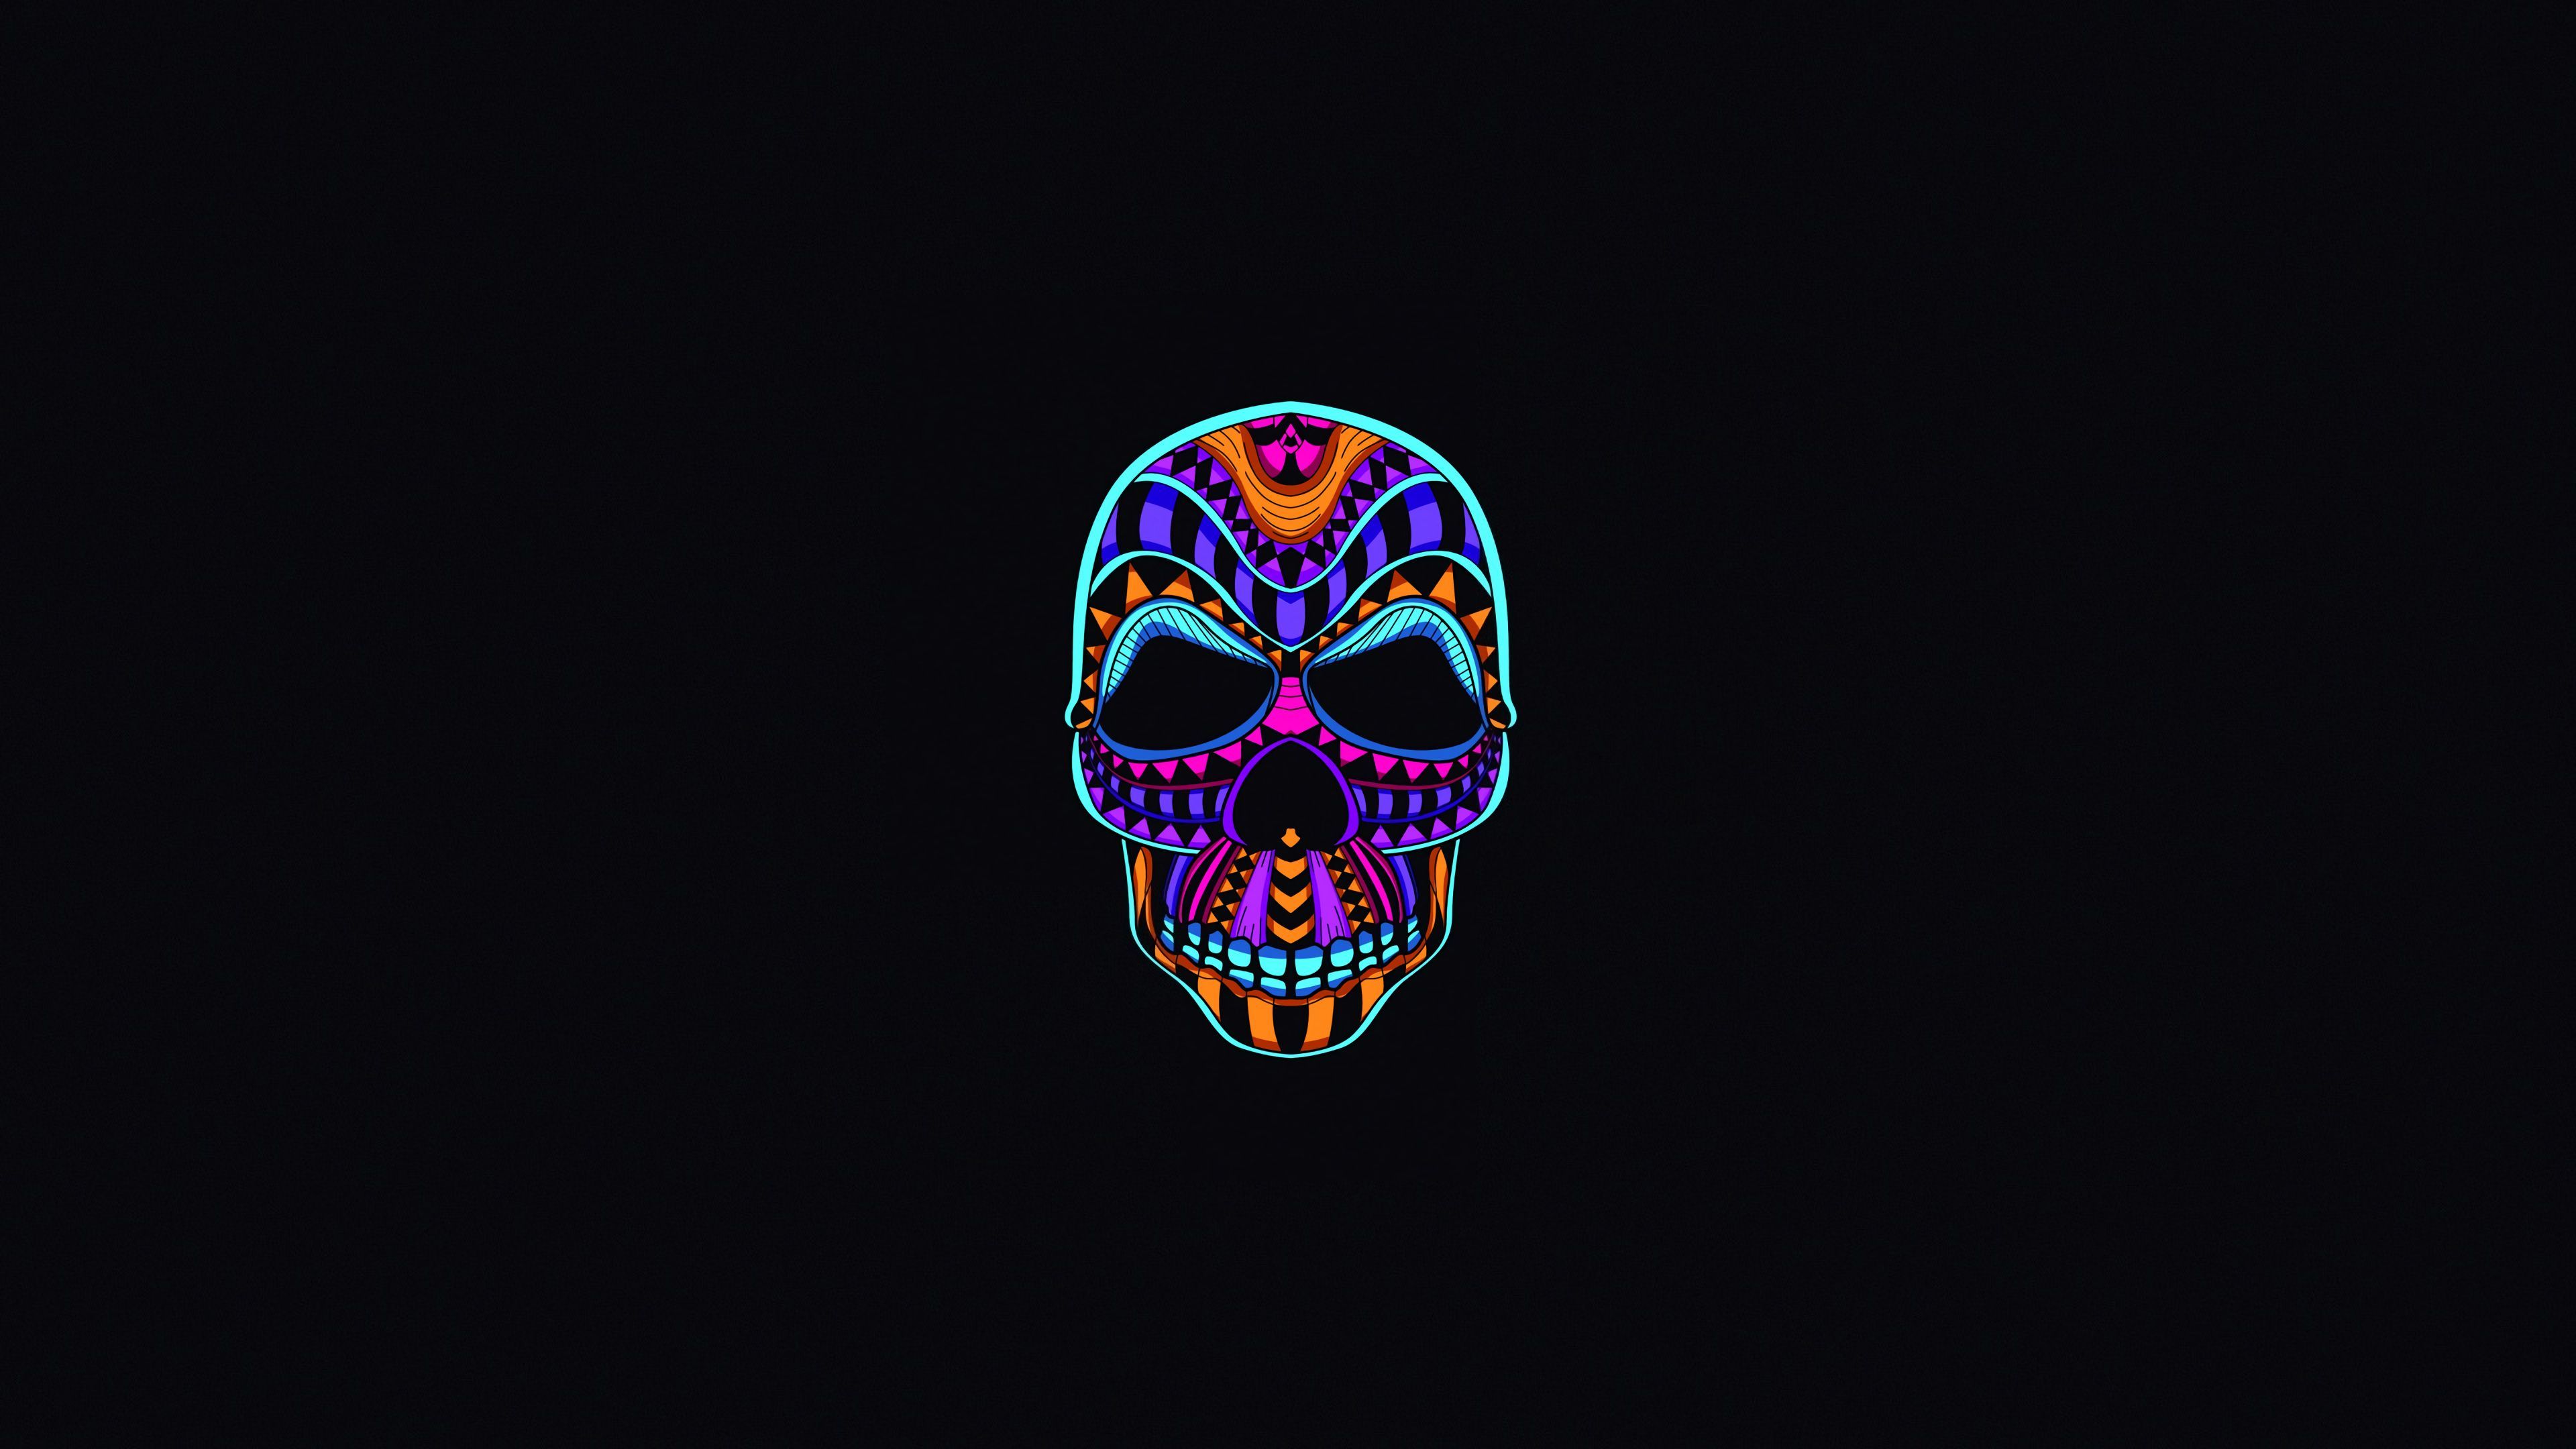 A neon skull on black background - Skull